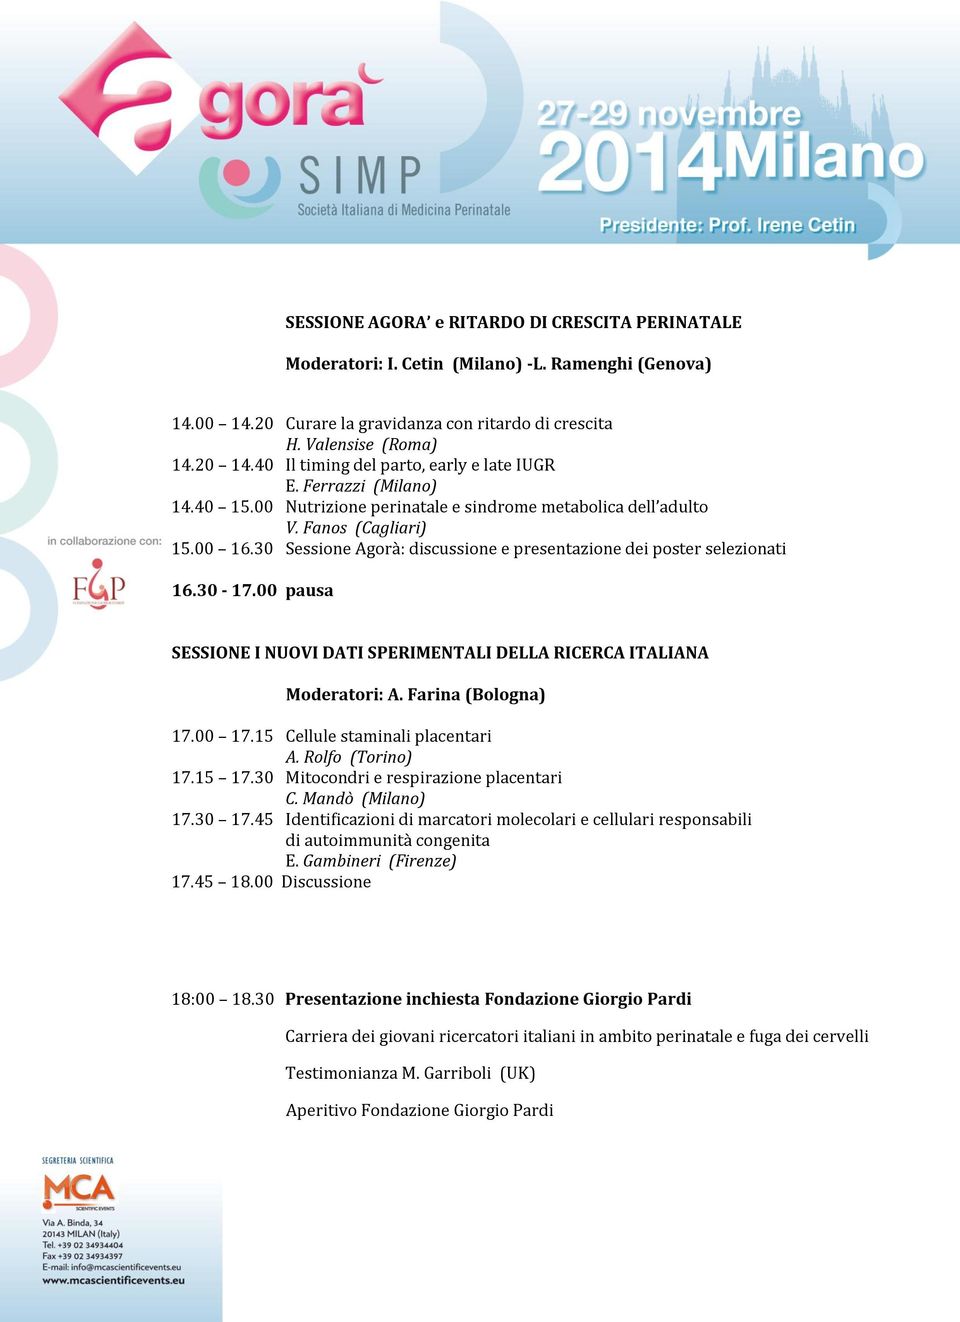 30 Sessione Agorà: discussione e presentazione dei poster selezionati 16.30-17.00 pausa SESSIONE I NUOVI DATI SPERIMENTALI DELLA RICERCA ITALIANA Moderatori: A. Farina (Bologna) 17.00 17.